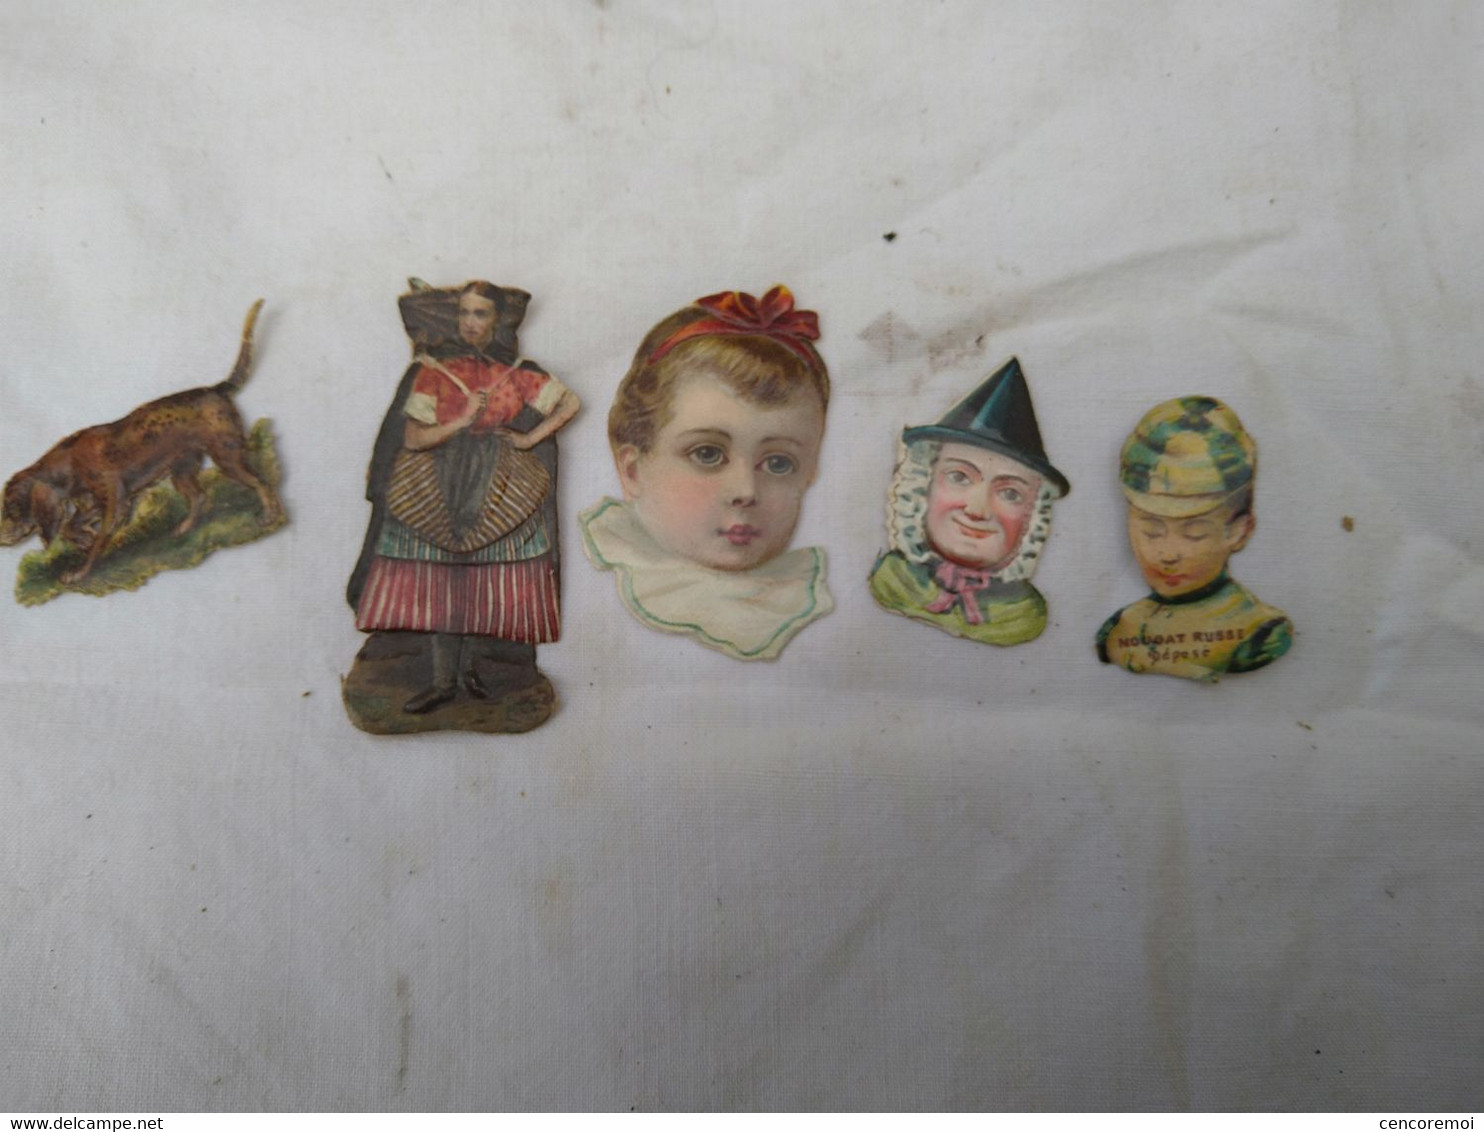 5 petits chromos anciens en papier gaufré et brillant, chien de chasse, publicité nougat Russe, tête d'enfant ....